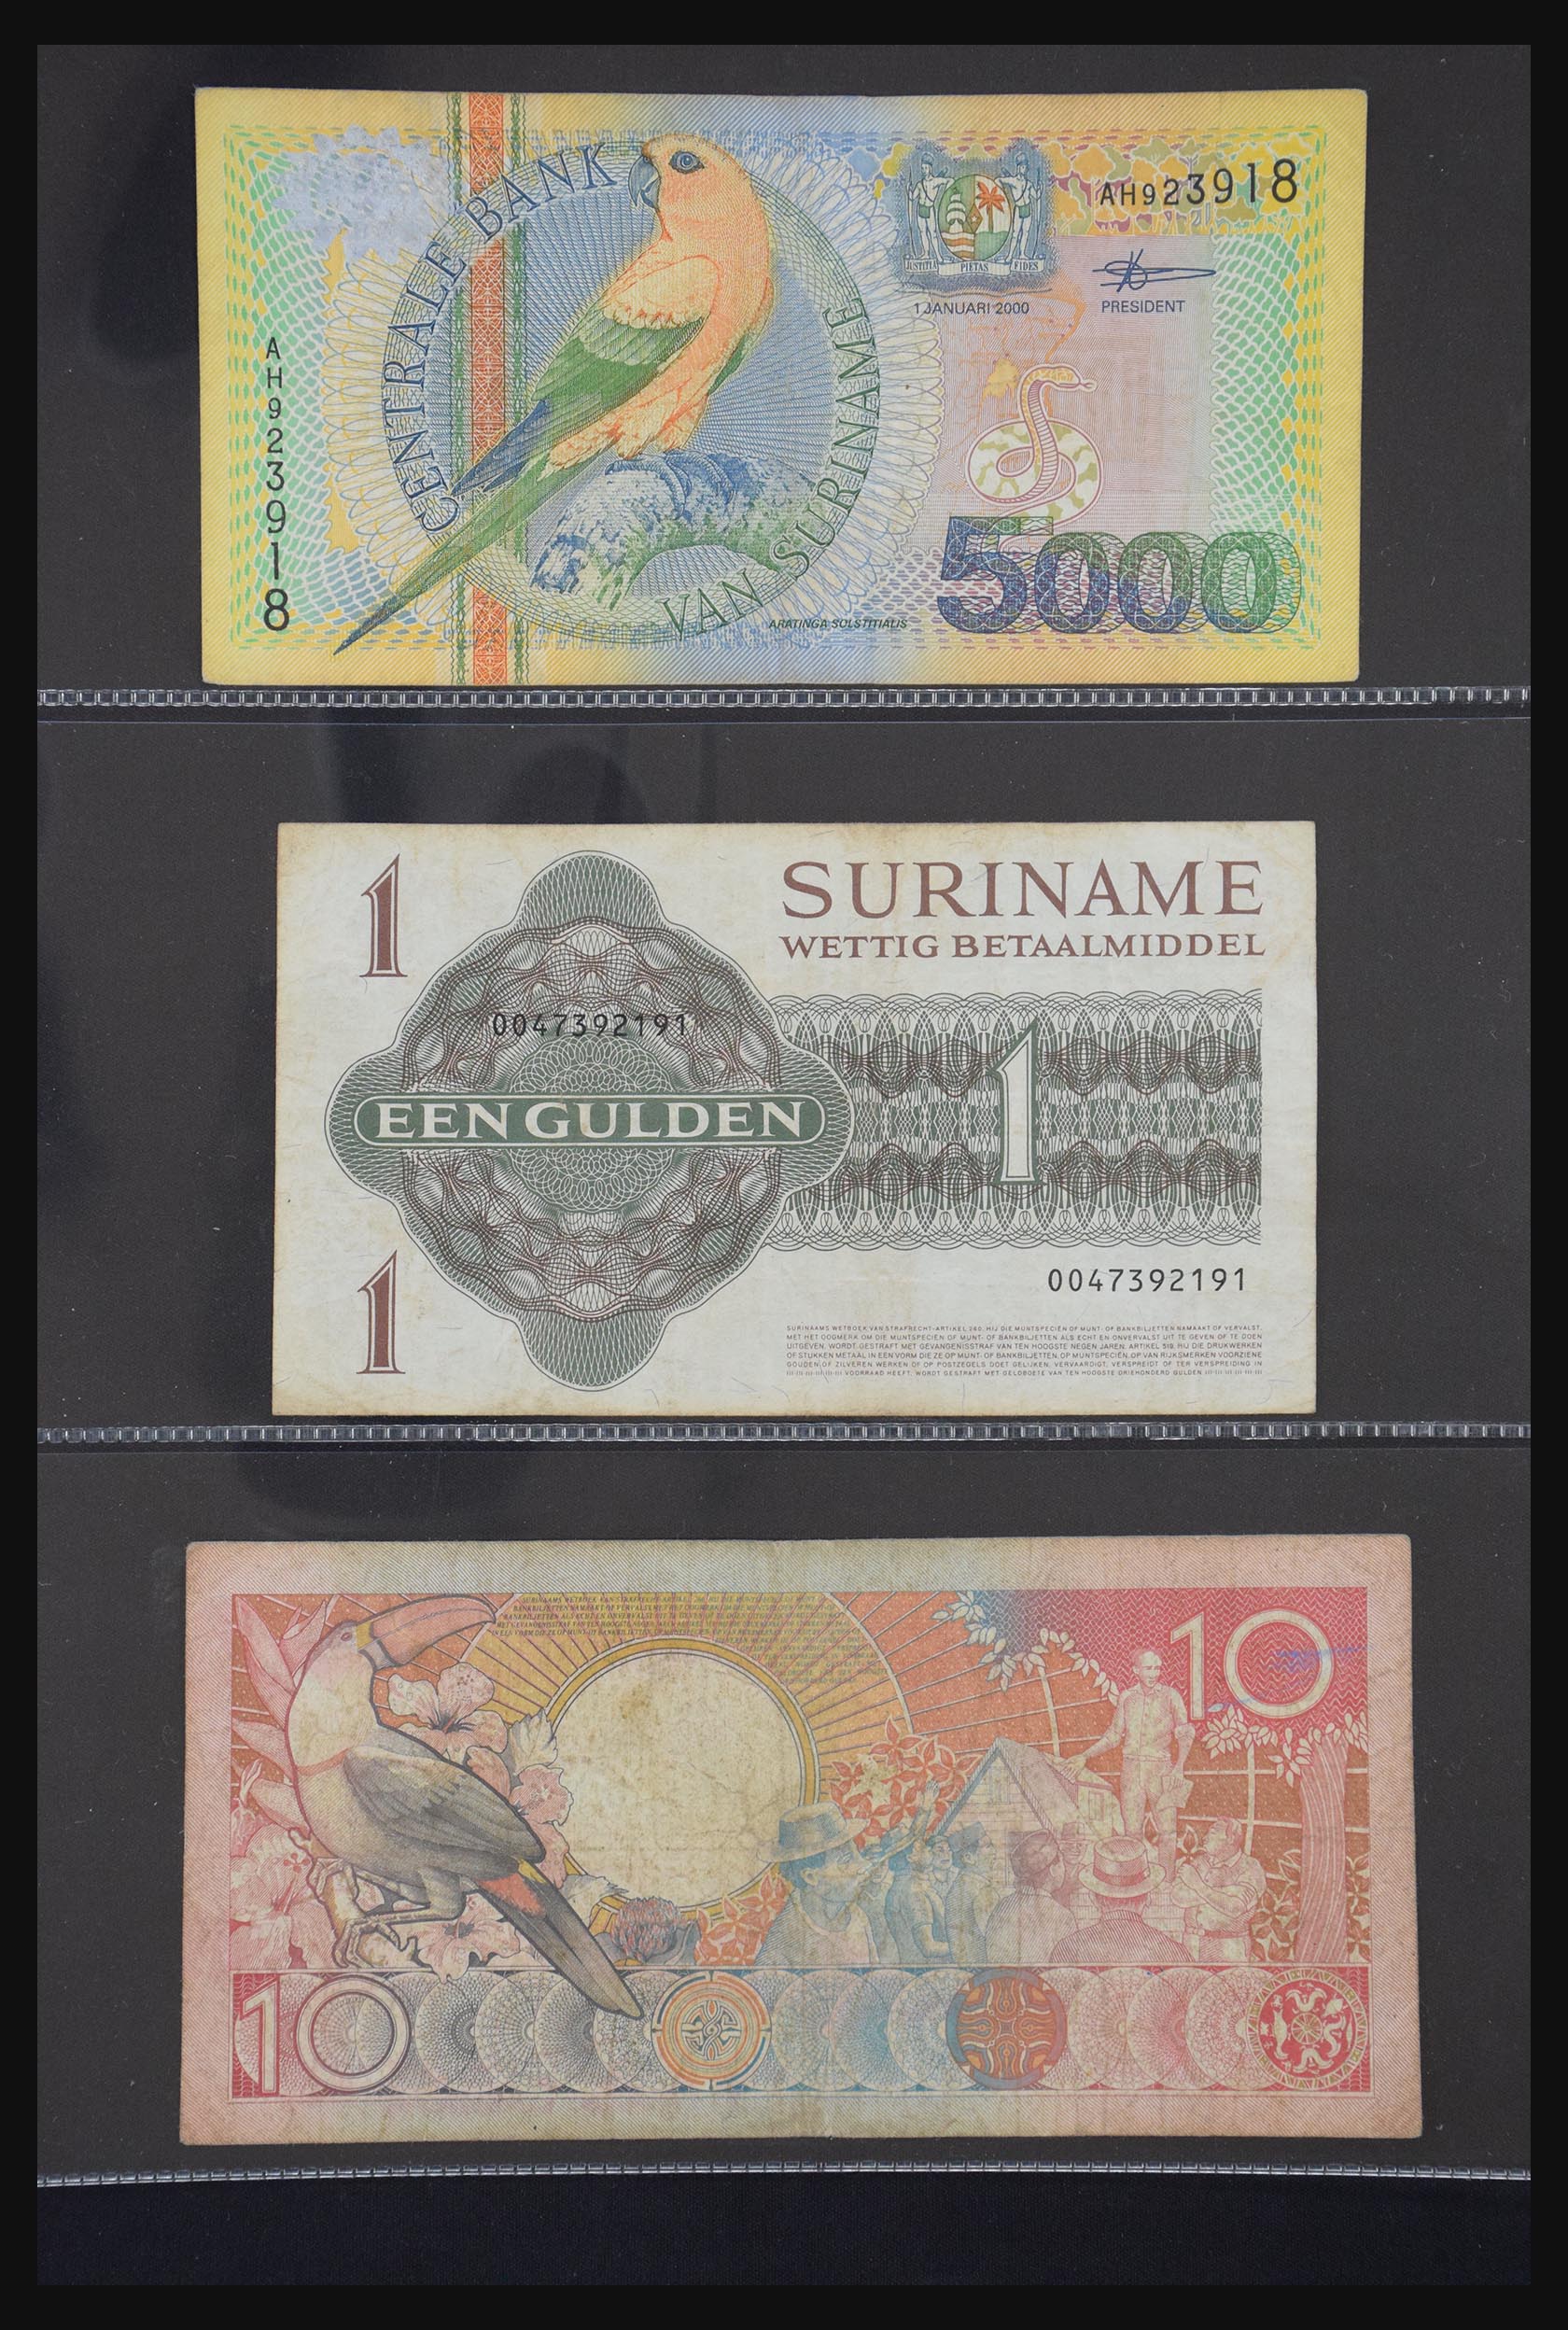 29404 058 - 29404 Netherlands banknotes 1924-1997.